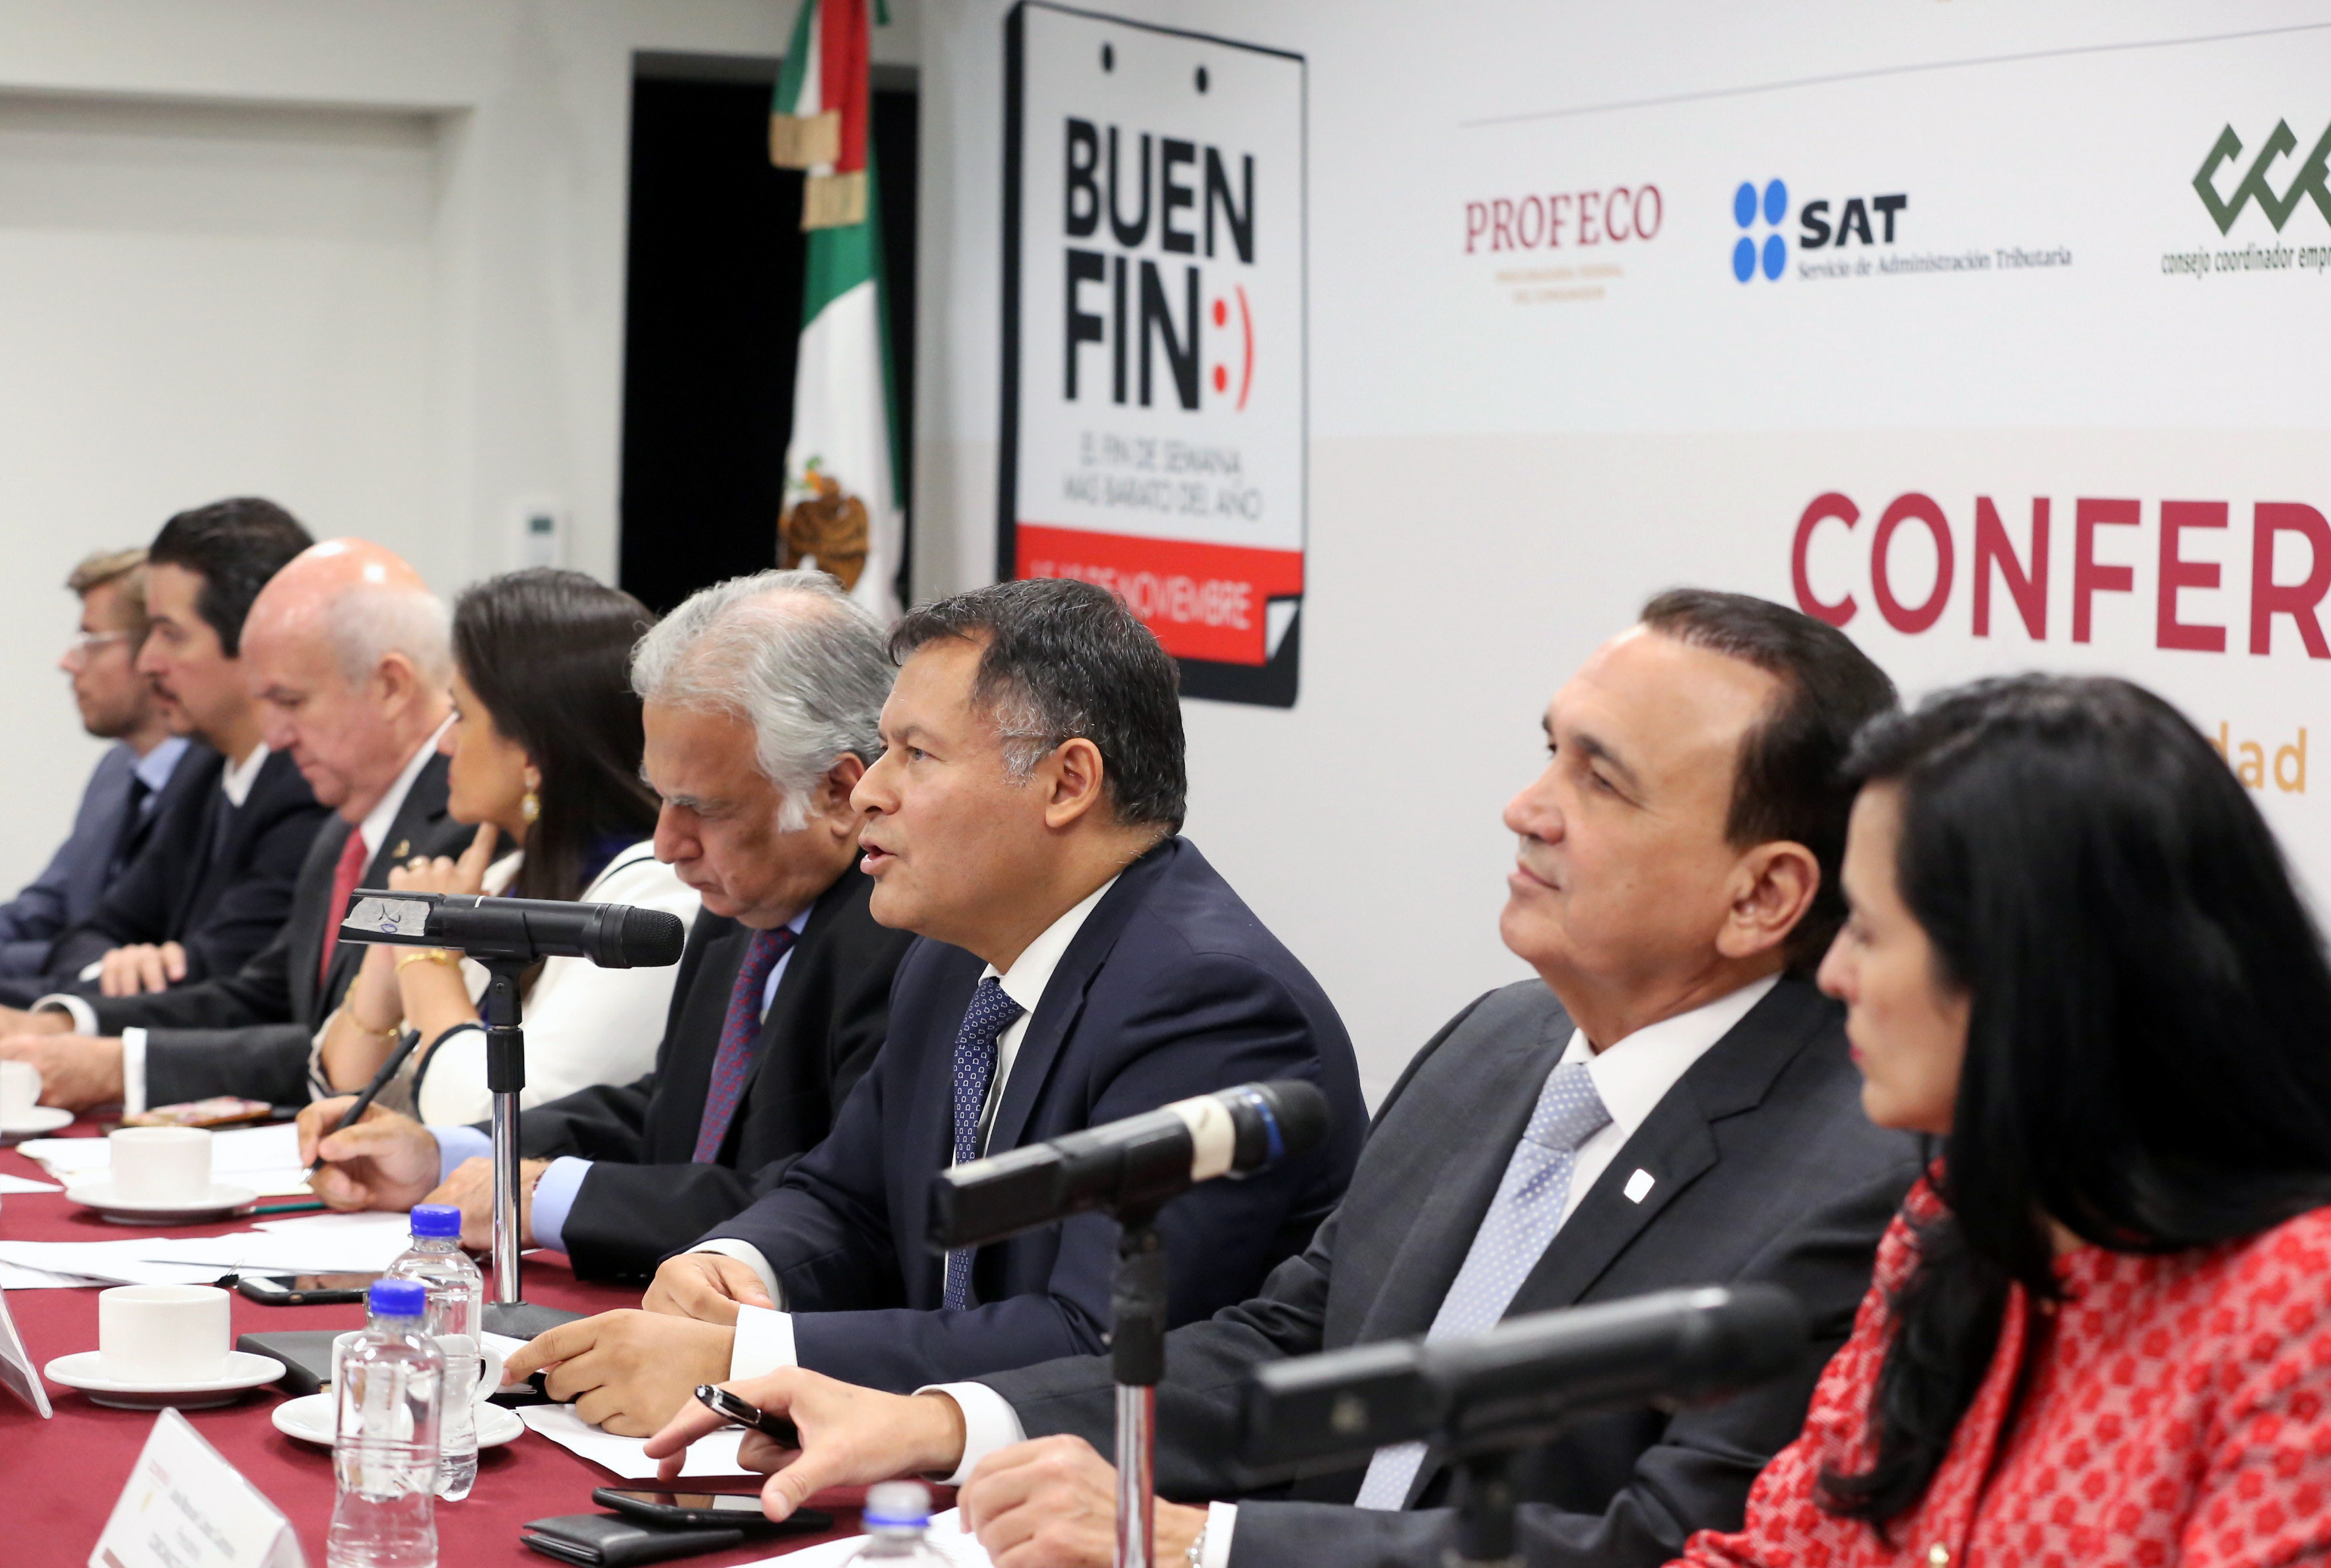 Palabras del Subsecretario de Industria y Comercio, Ernesto Acevedo Fernández, en la Conferencia de Prensa sobre “El Buen Fin 2019”